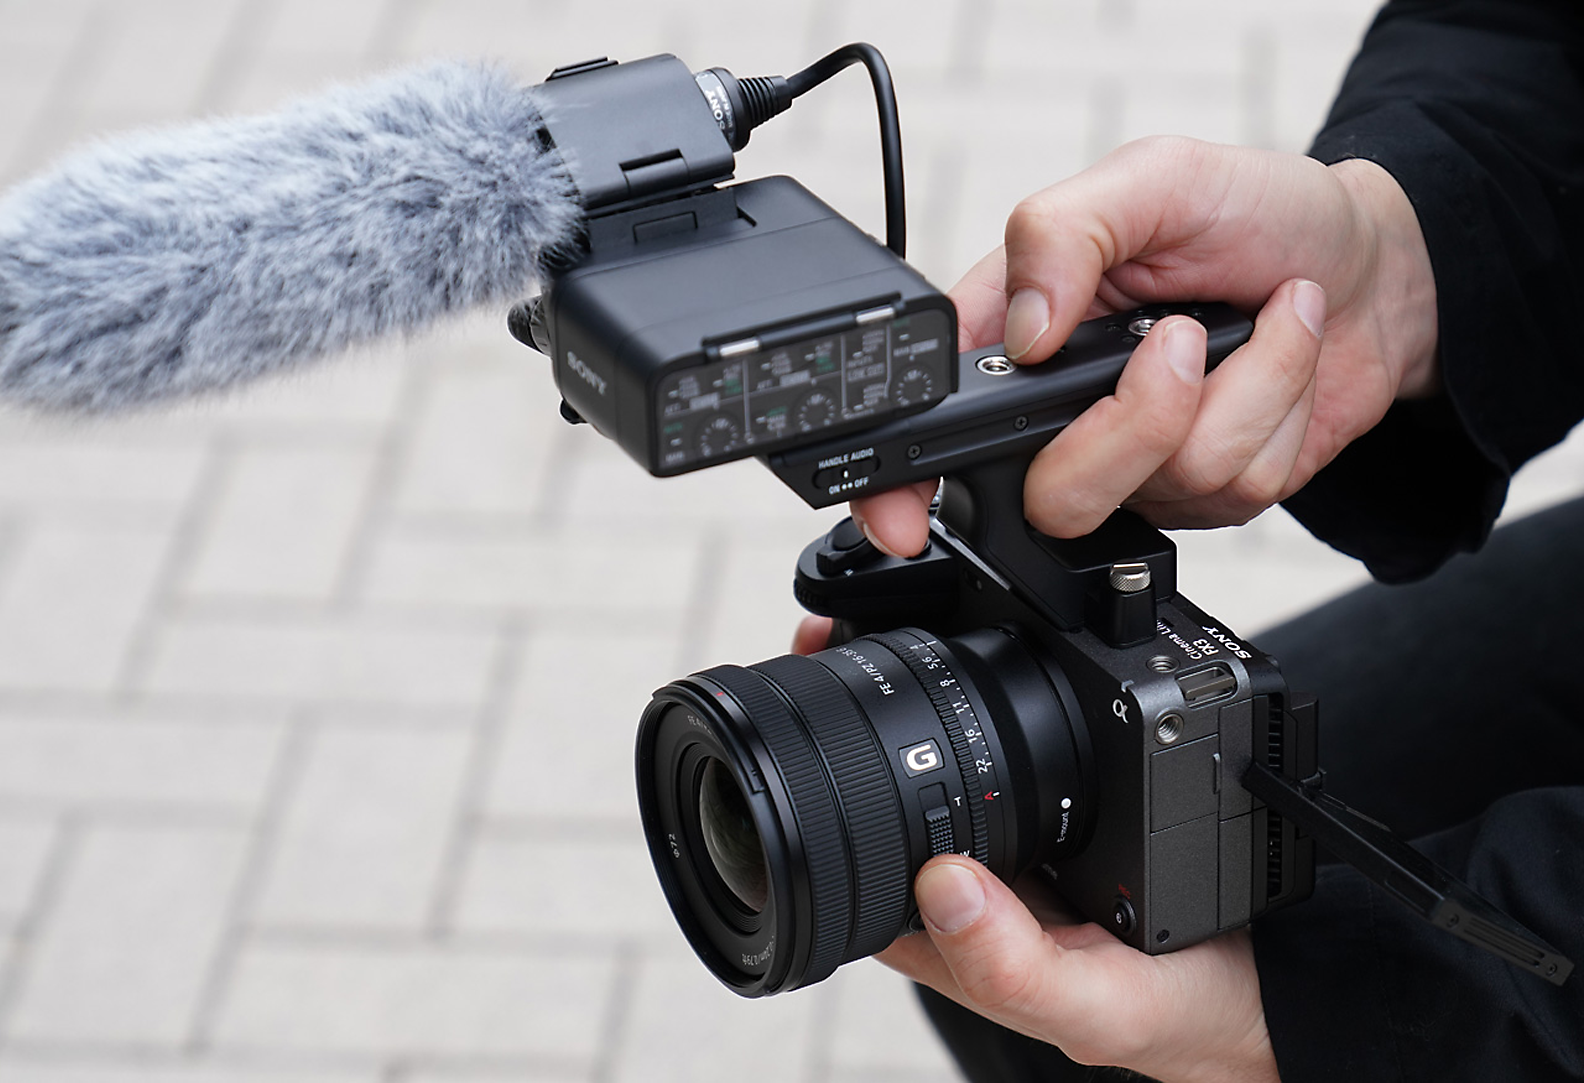 Situační obrázek pořízený pomocí objektivu SELP1635G nasazeného na kameře FX3 s mikrofonem ECM-XM1